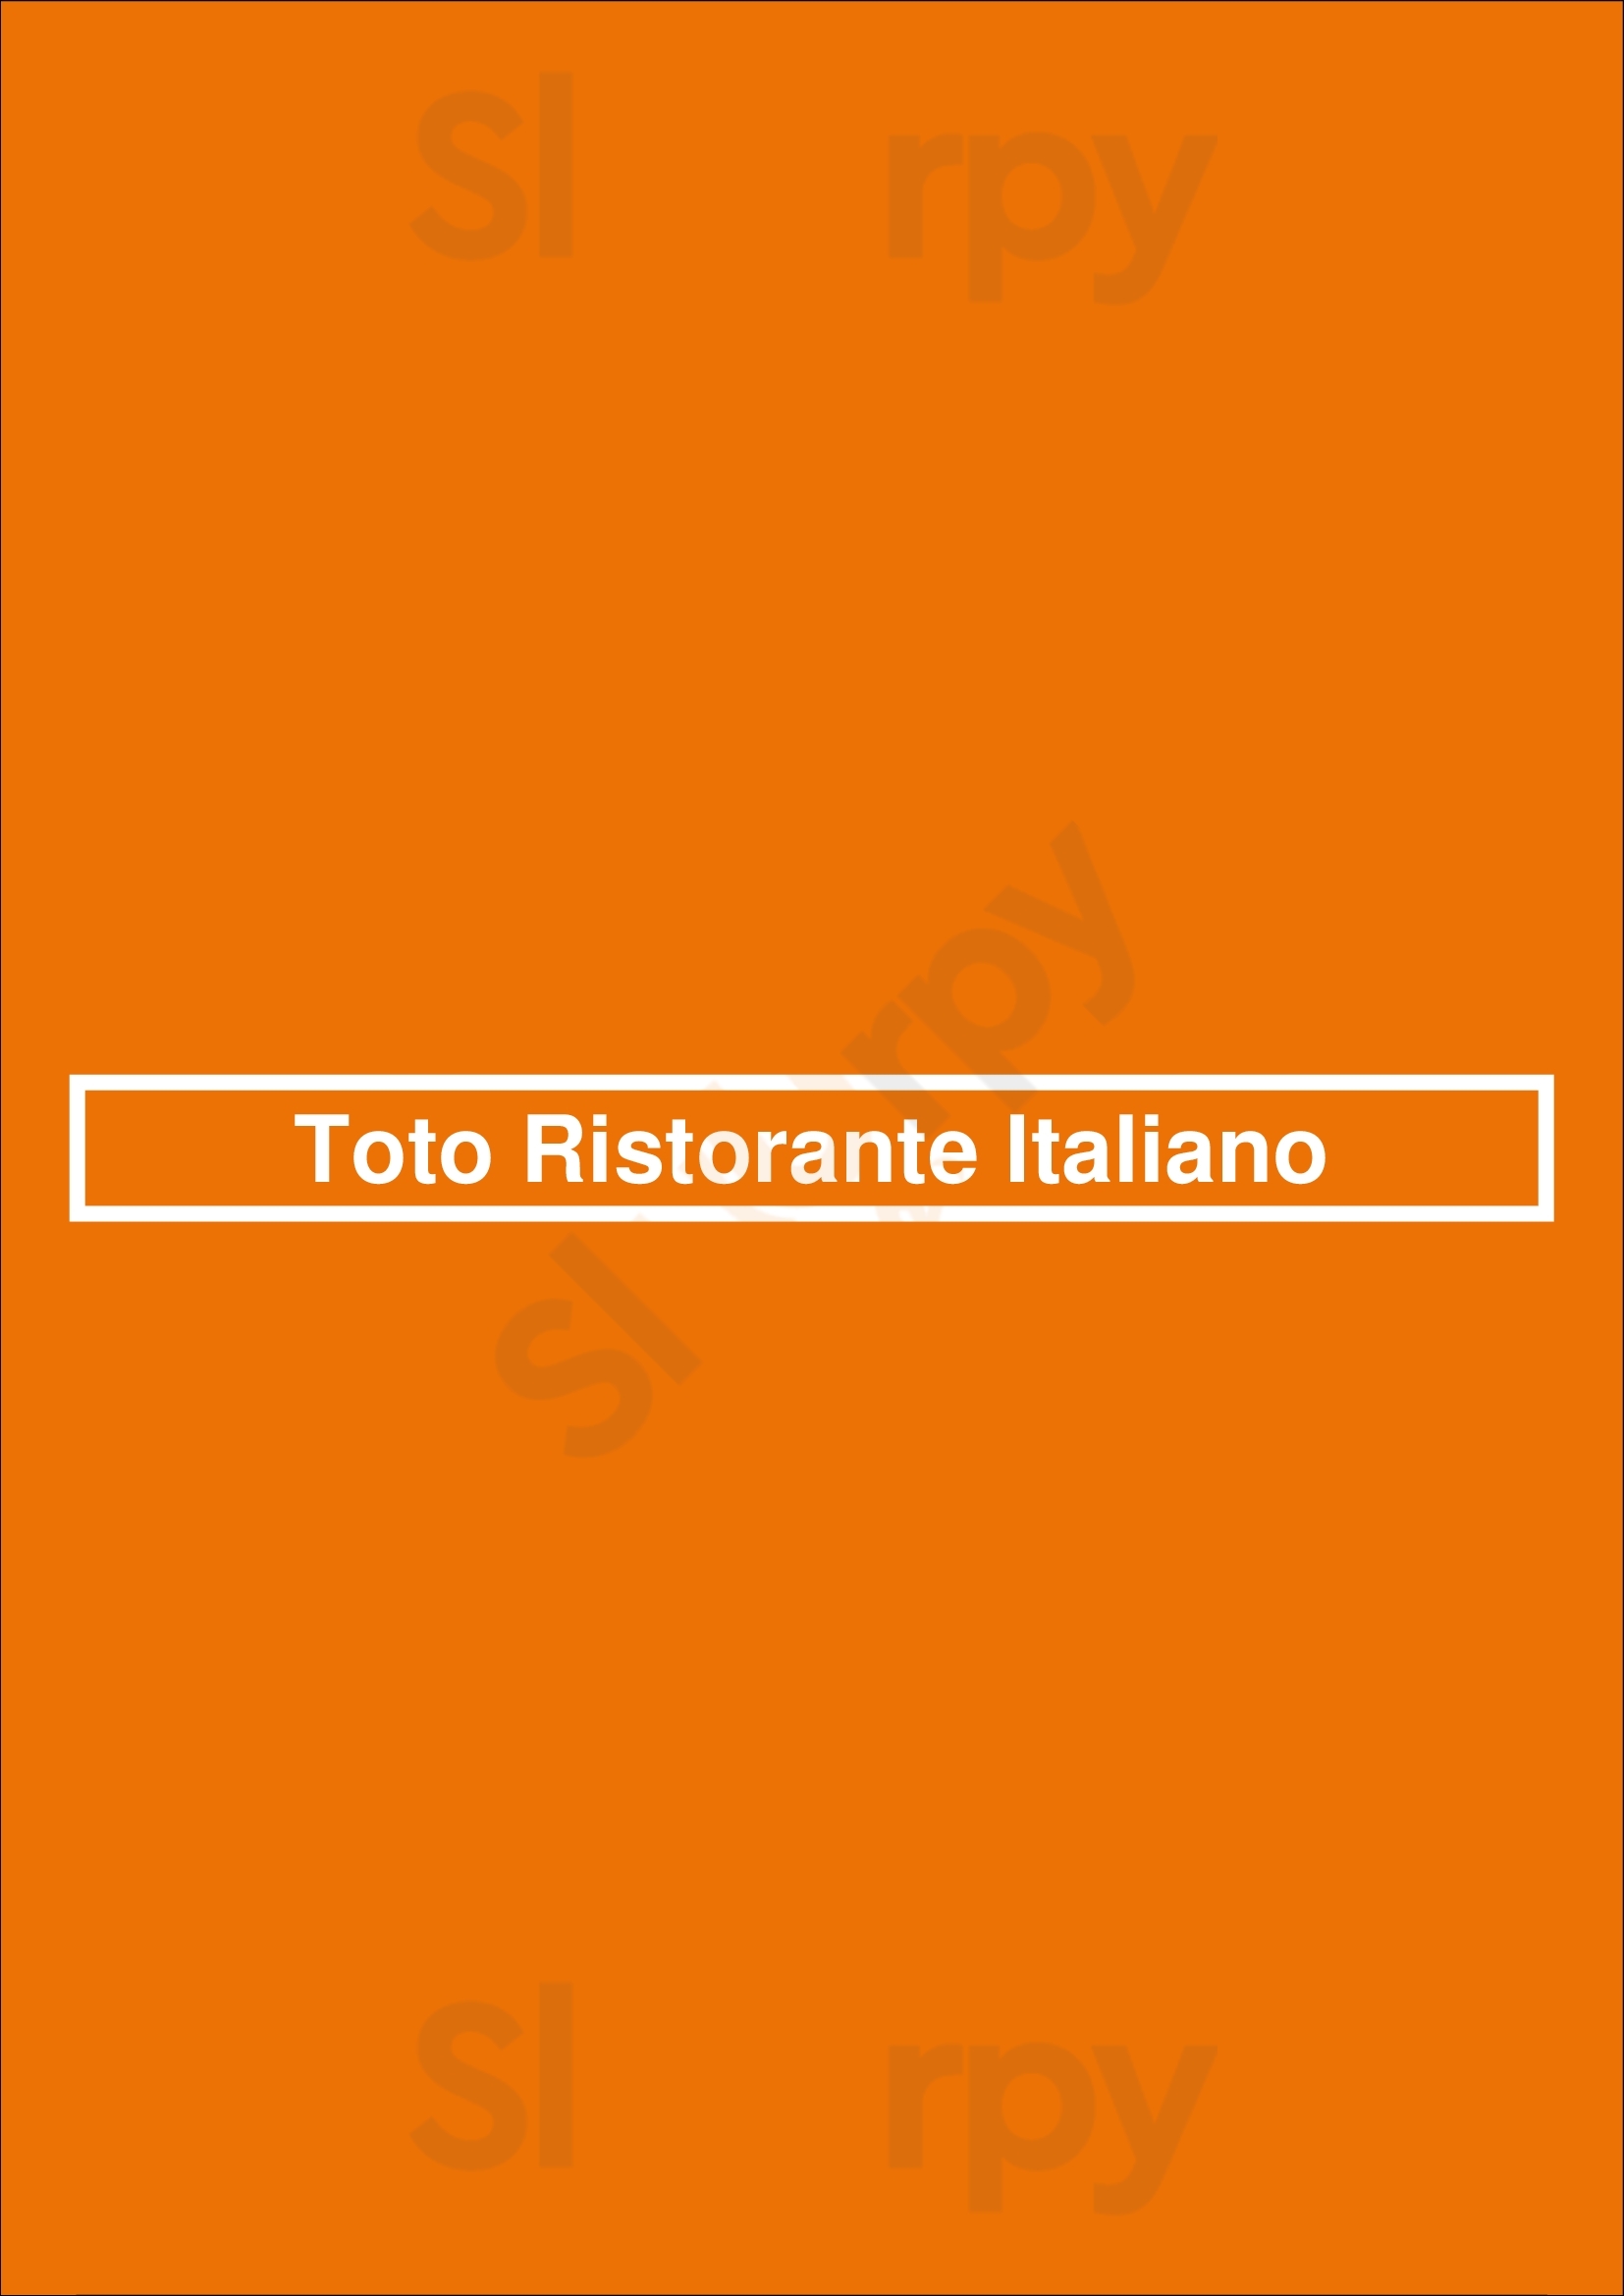 Toto Ristorante Italiano Dublin Menu - 1